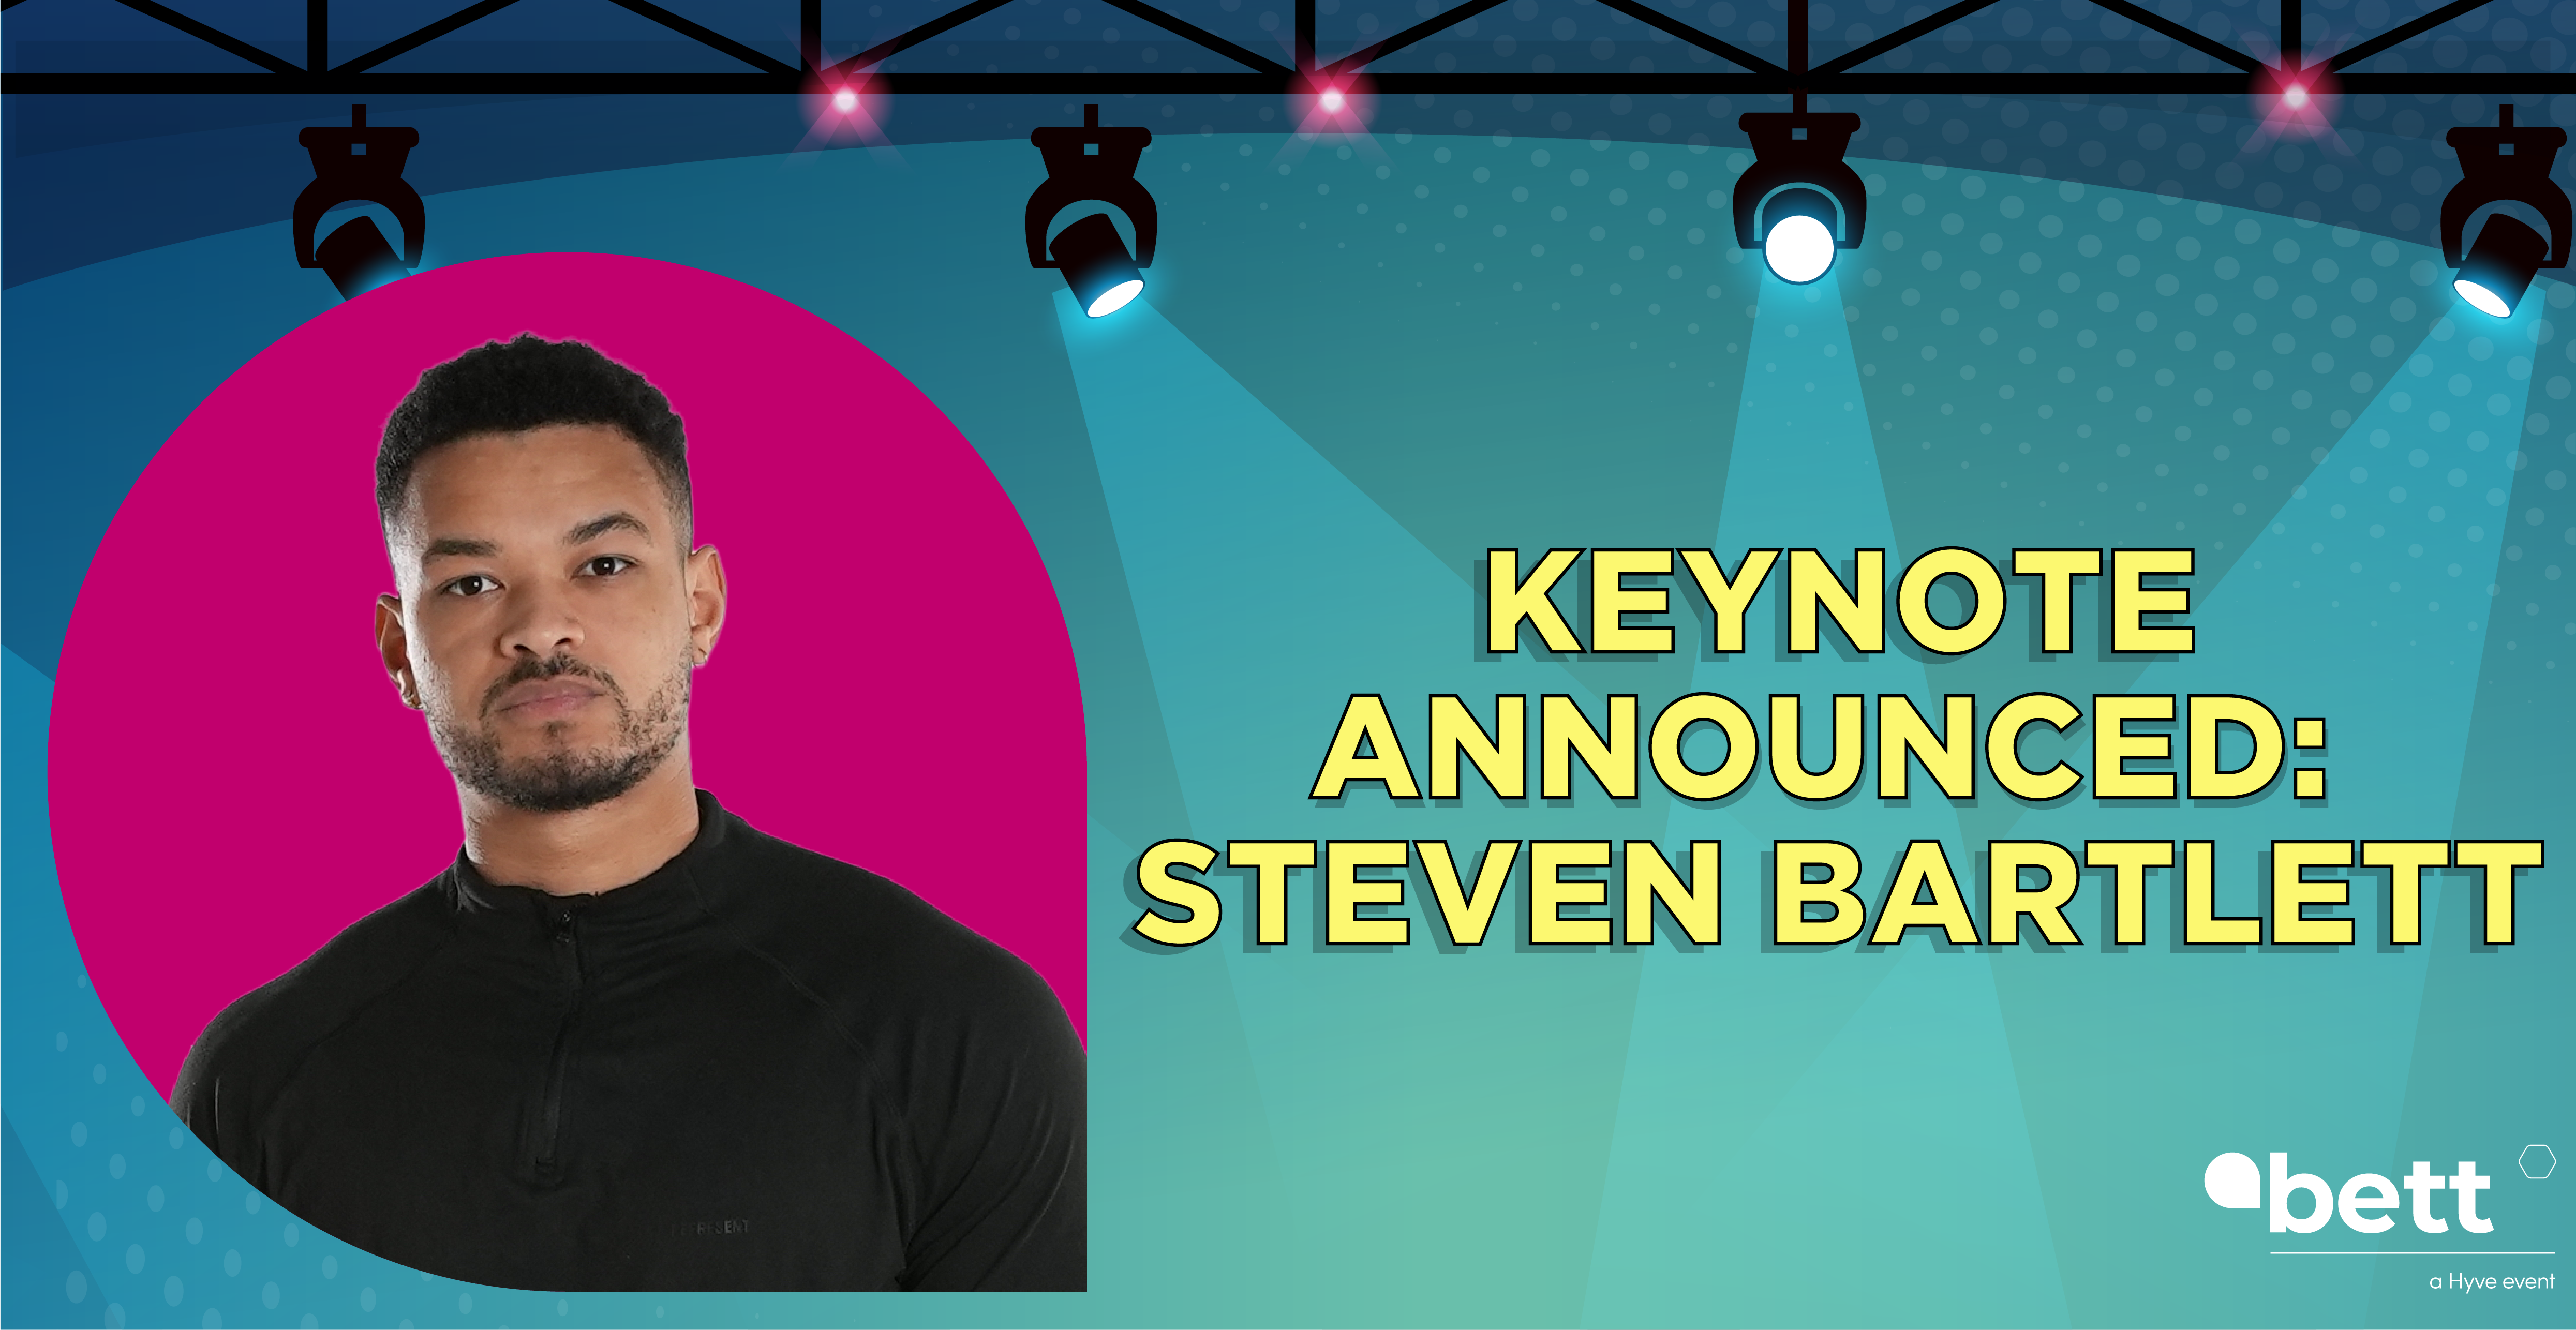 Steven Bartlett announced as keynote speaker